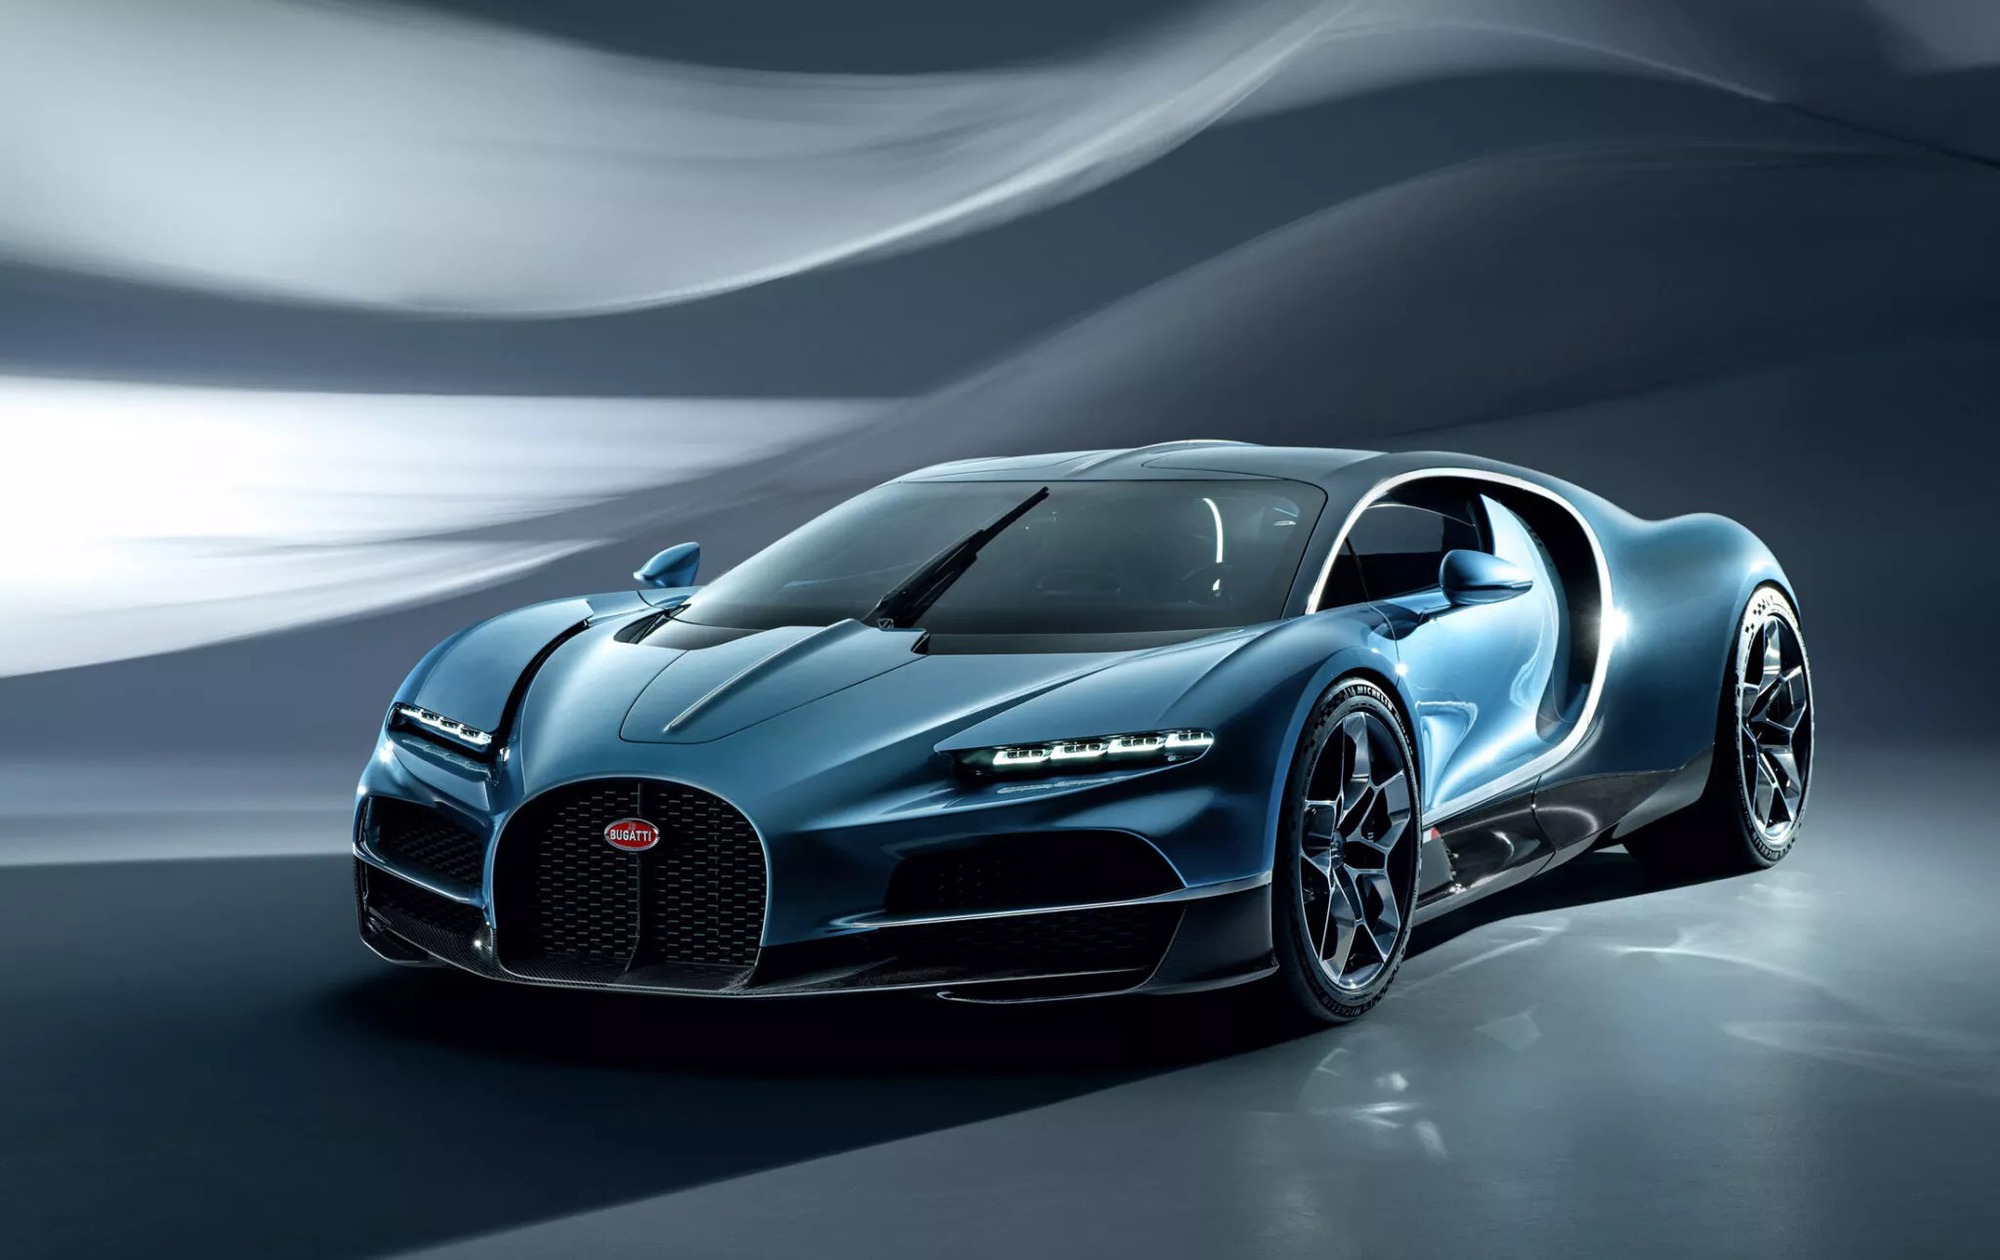 Bugatti Tourbillon Hybrid ra mắt: Mọi thông số khủng hơn Chiron, 0-100km/h chỉ trong 2 giây, tối đa 445km/h- Ảnh 15.